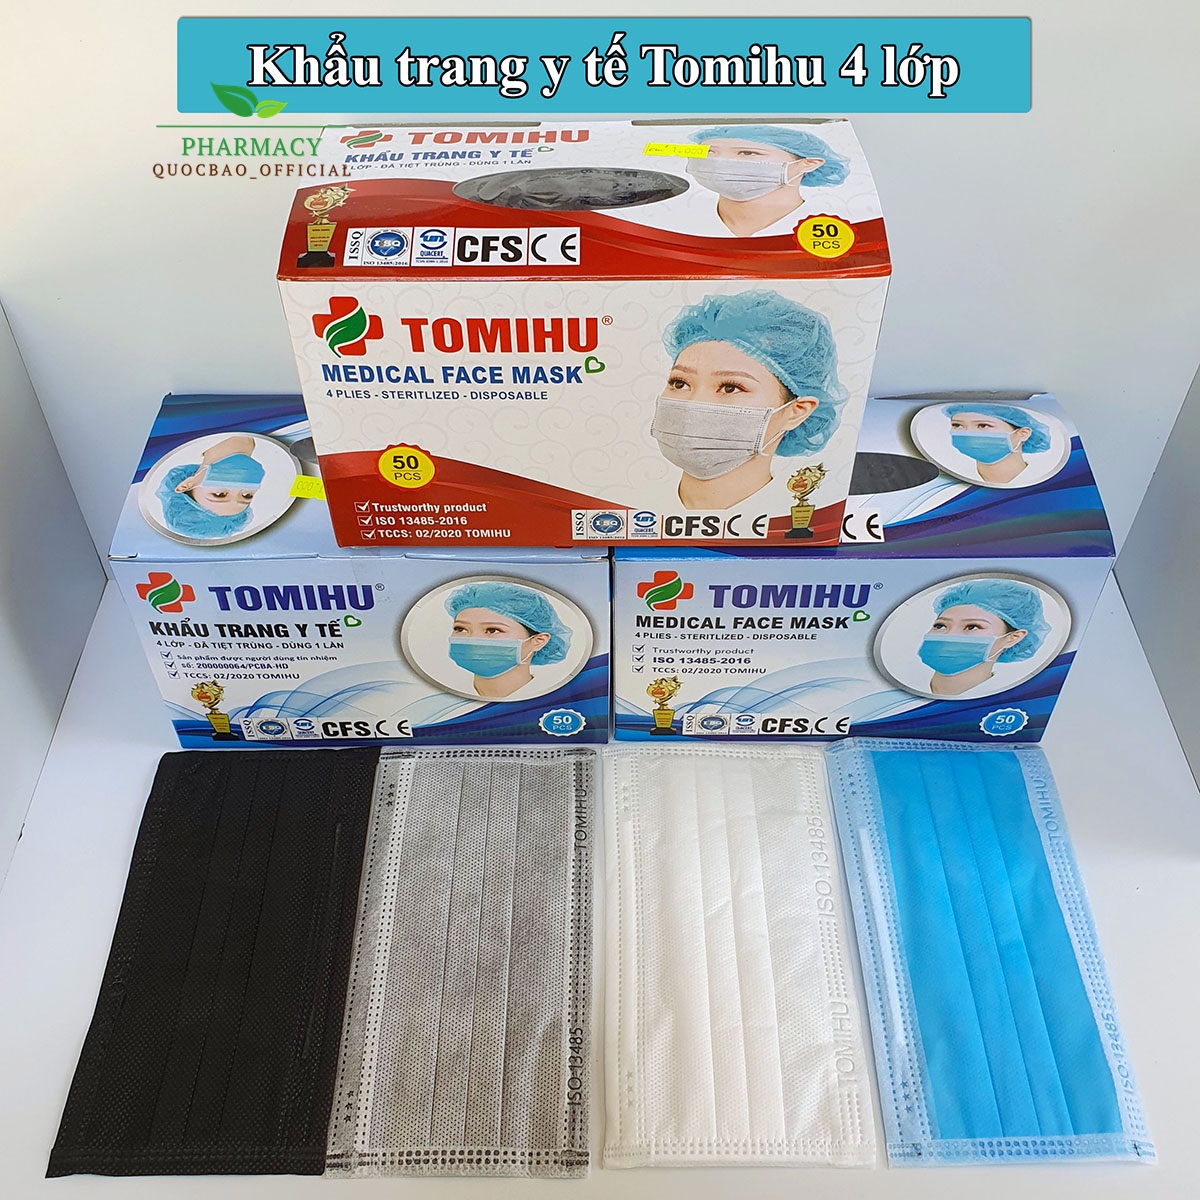 ⚡ Khẩu trang y tế 4 lớp Tomihu ⚡ Hộp 50 cái ⚡ Kháng khuẩn, cực mịn, dễ thở ⚡ Ngăn vi khuẩn, khói, bụi 🍀 Màu xanh, màu xám, màu trắng, màu đen 🍀